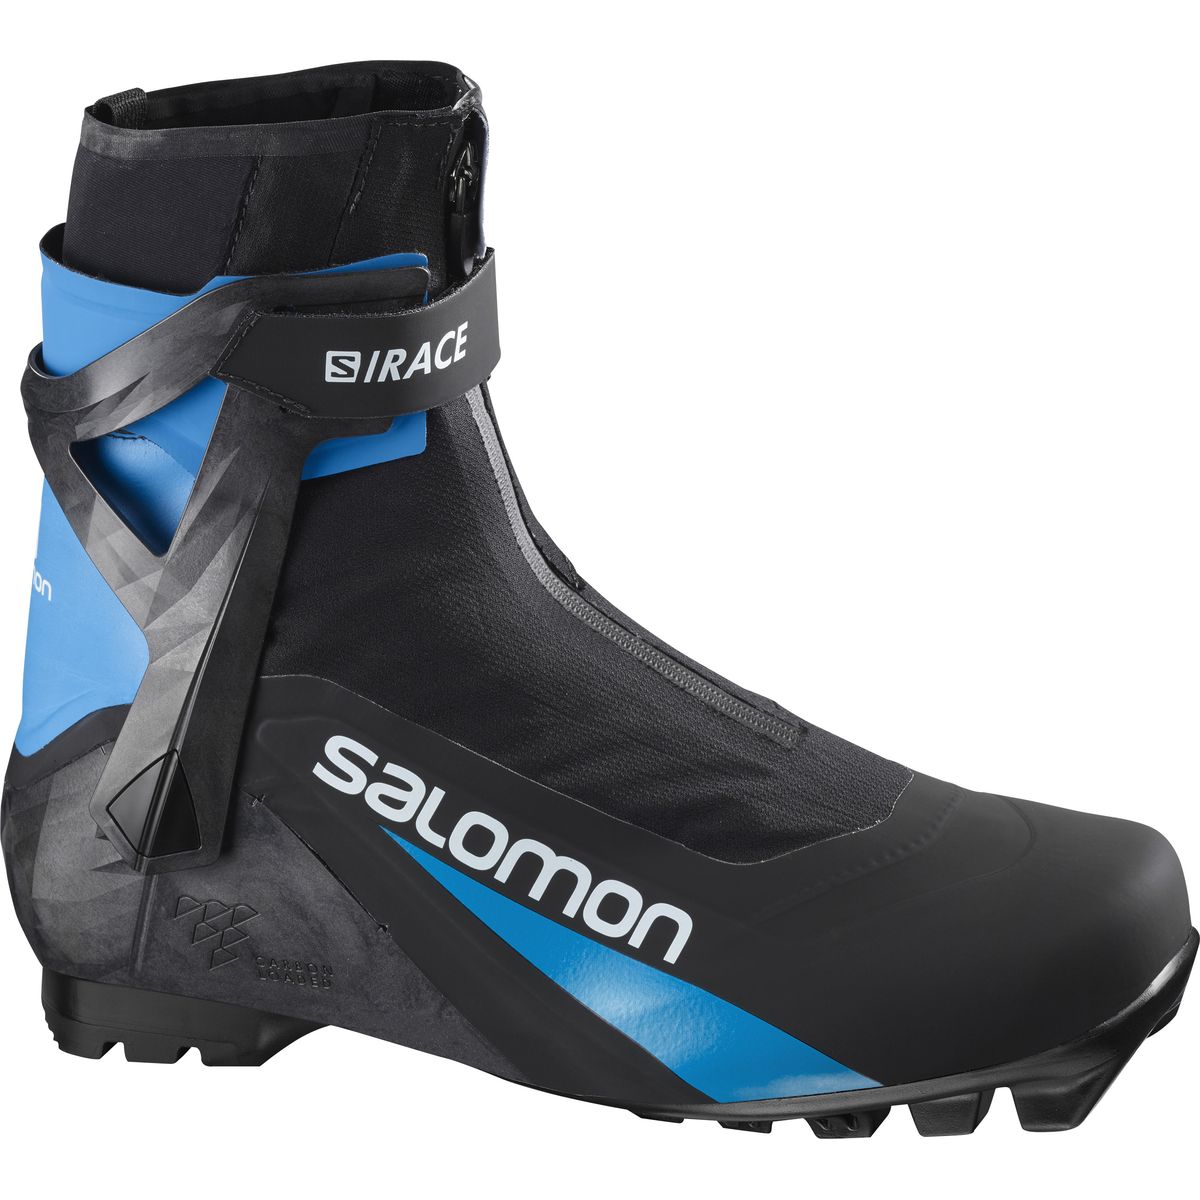 Salomon S/Race Carbon Skate Pilot Unisex Langlaufschuhe